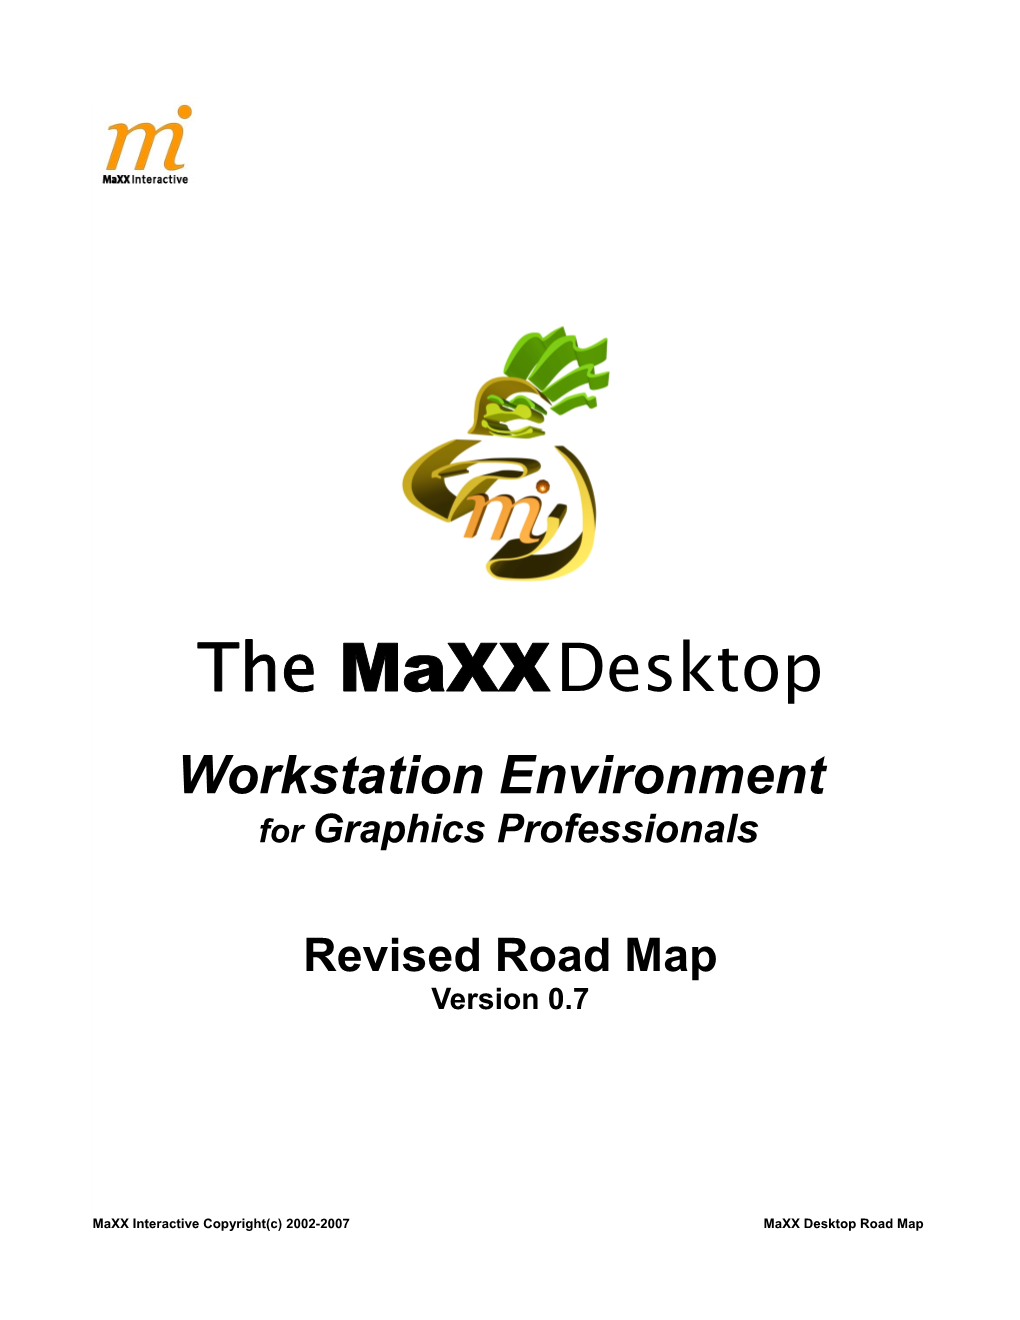 The Maxxdesktop